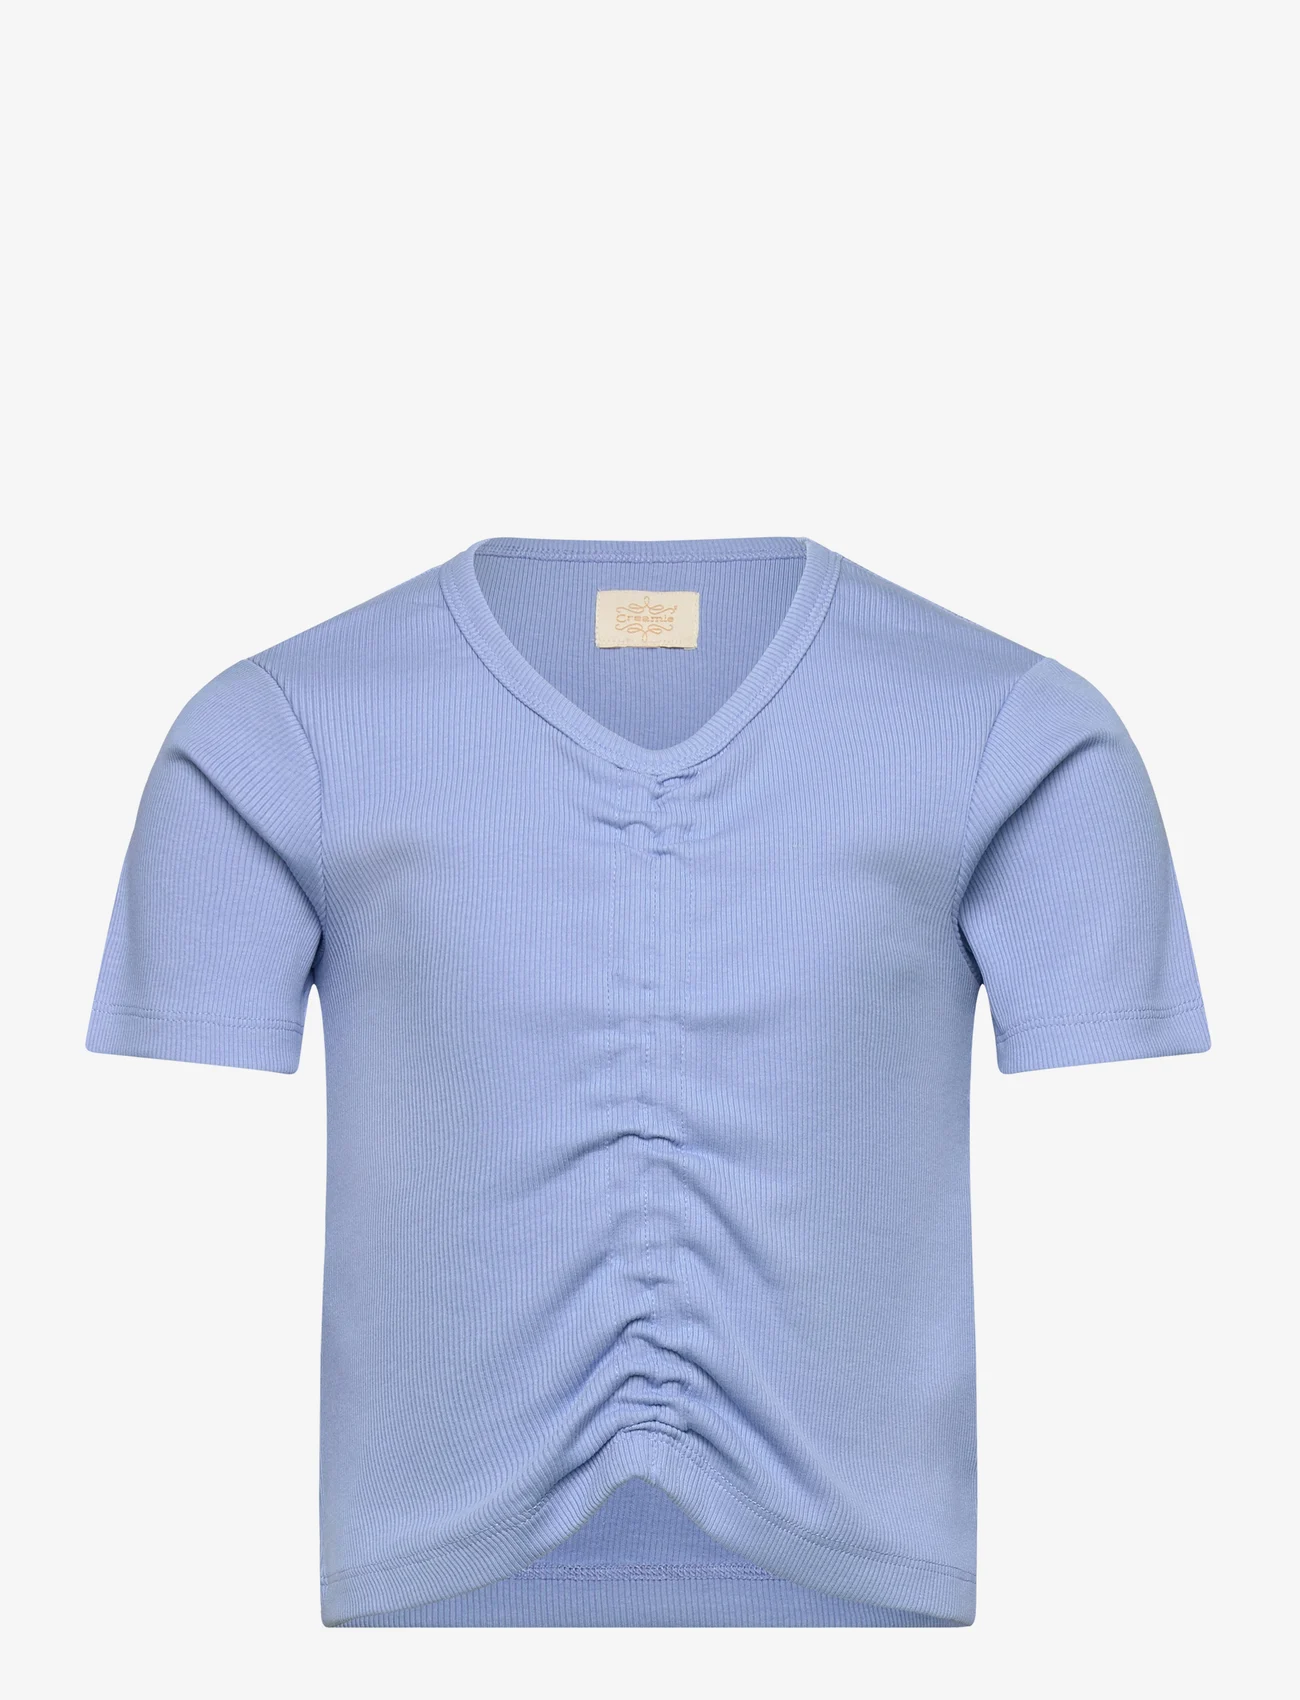 Creamie - T-shirt SS Rib - lyhythihaiset - bel air blue - 0